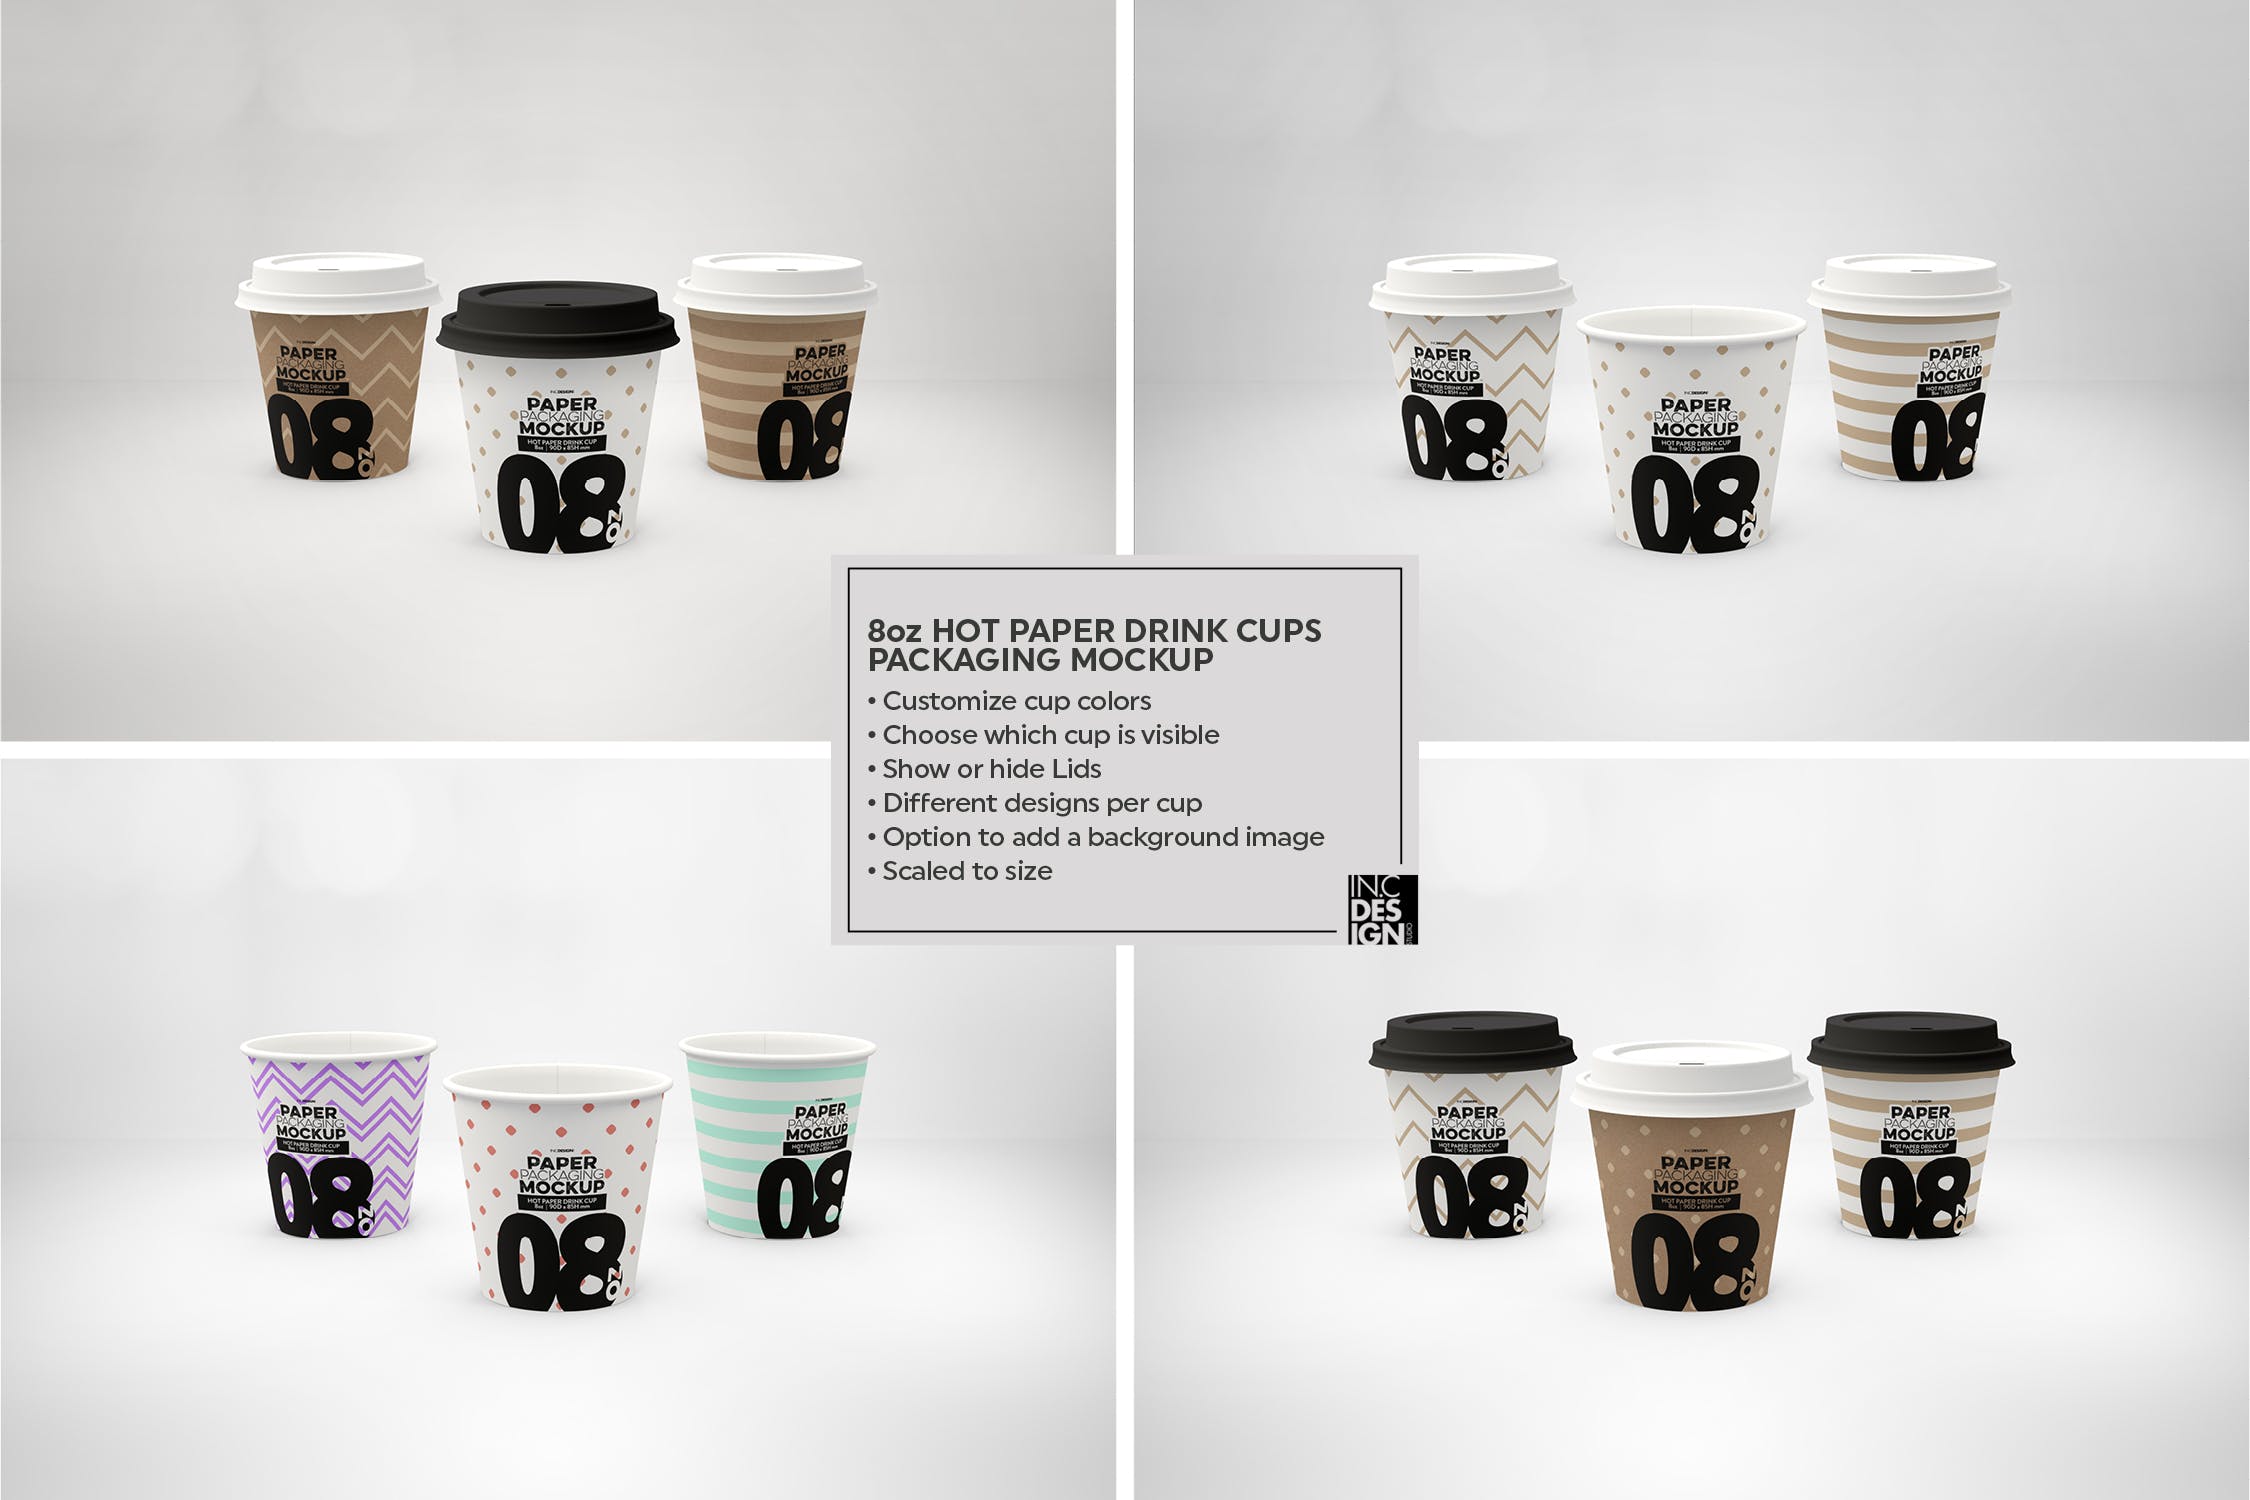 热饮一次性纸杯外观设计蚂蚁素材精选 Paper Hot Drink Cups Packaging Mockup插图(15)